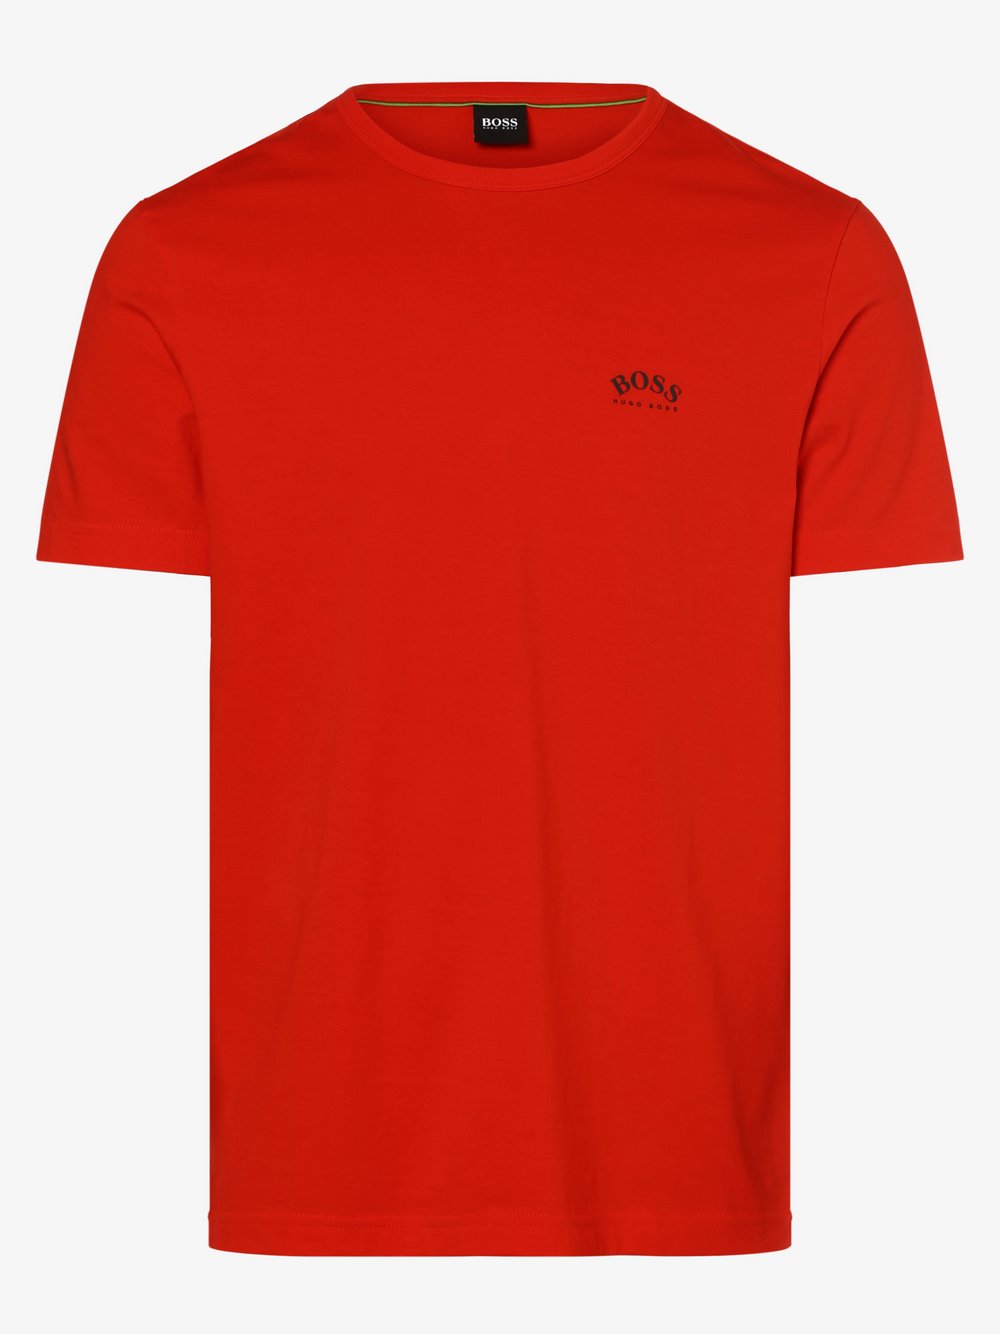 BOSS Athleisure - T-shirt męski – Tee Curved, czerwony